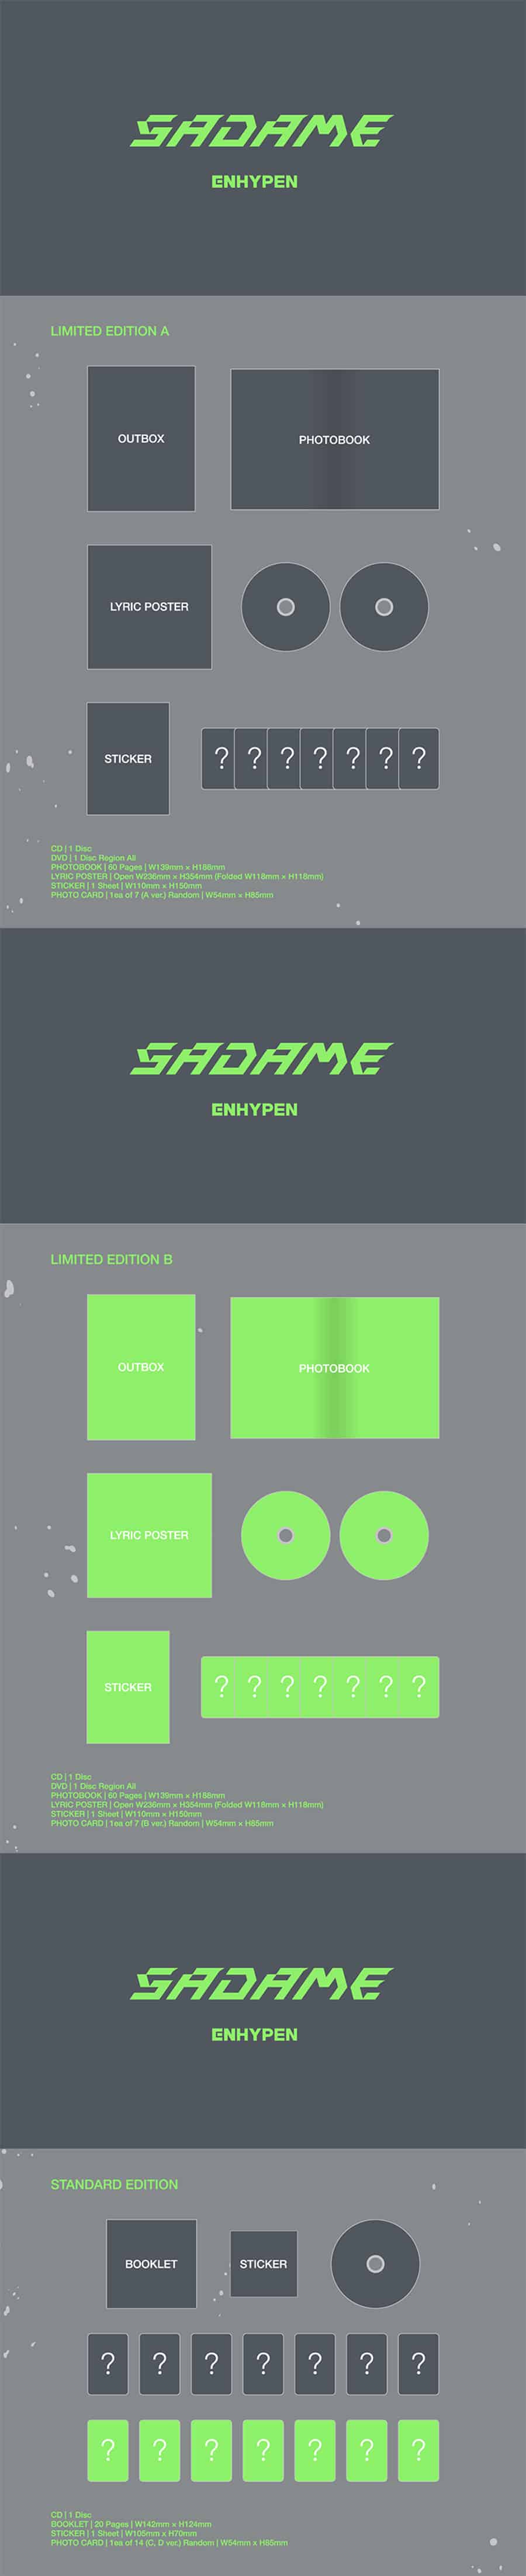 enhypen-1st-jp-album-scadame-3-set-wholesale